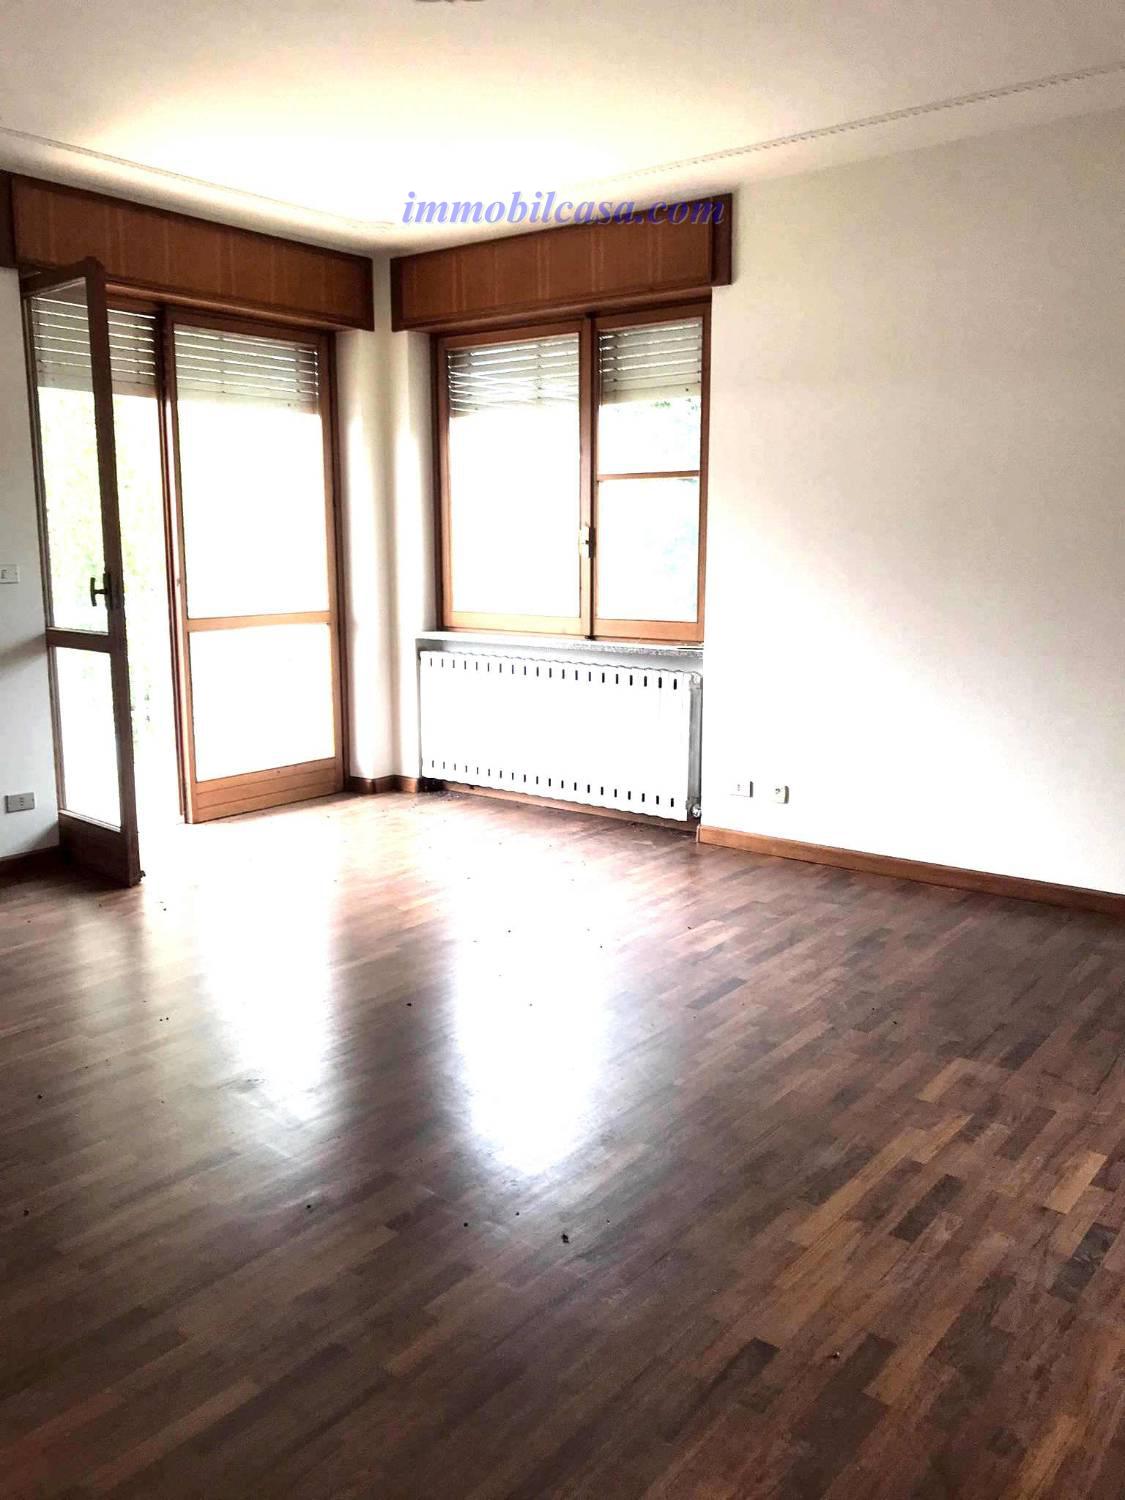 Appartamento in vendita a Dronero, 4 locali, prezzo € 160.000 | PortaleAgenzieImmobiliari.it